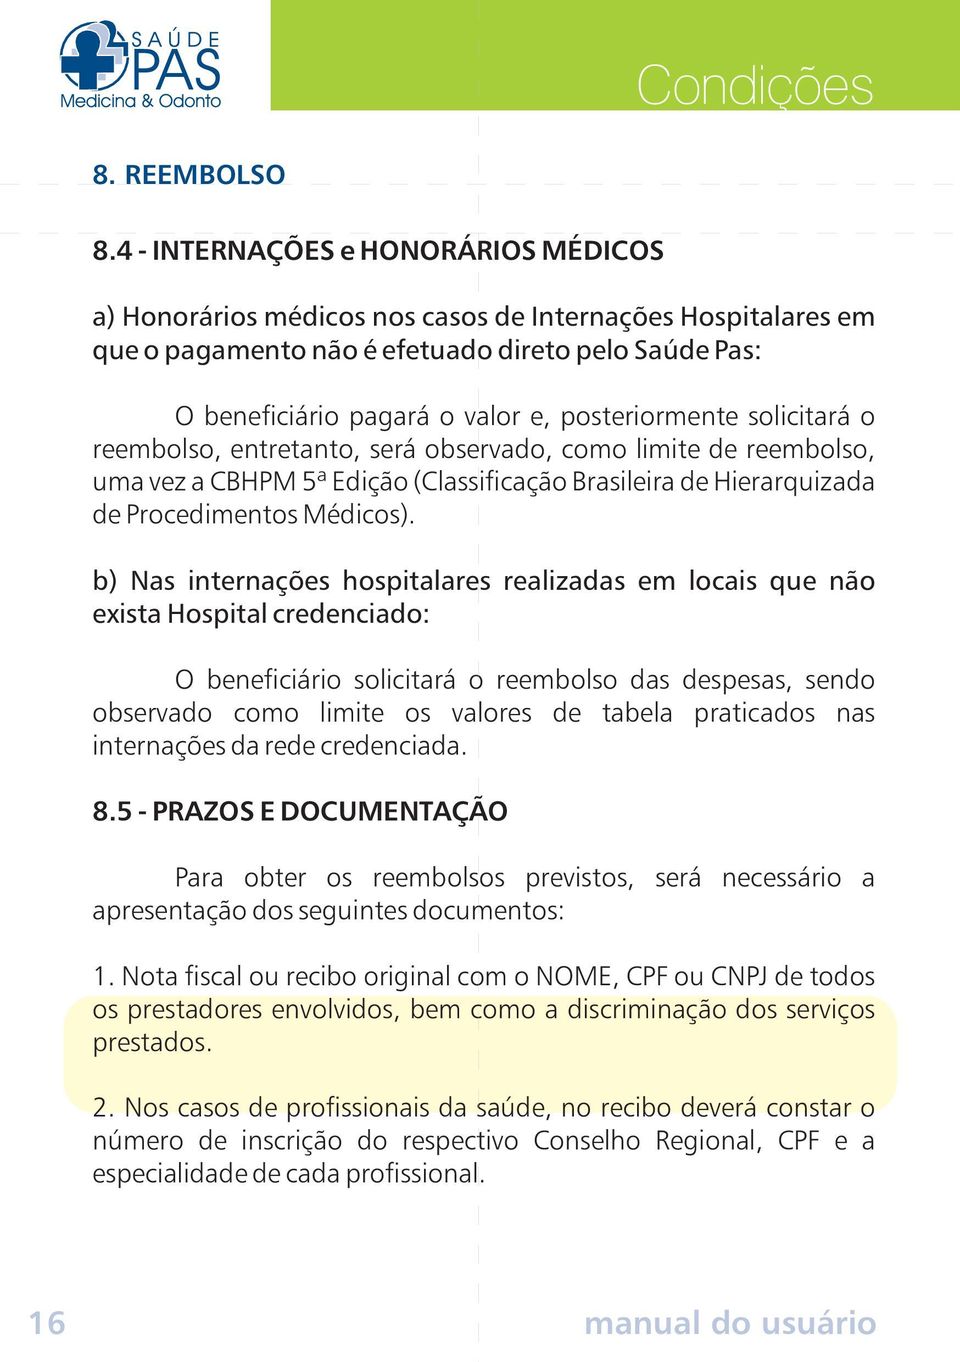 posteriormente solicitará o reembolso, entretanto, será observado, como limite de reembolso, uma vez a CBHPM 5ª Edição (Classificação Brasileira de Hierarquizada de Procedimentos Médicos).